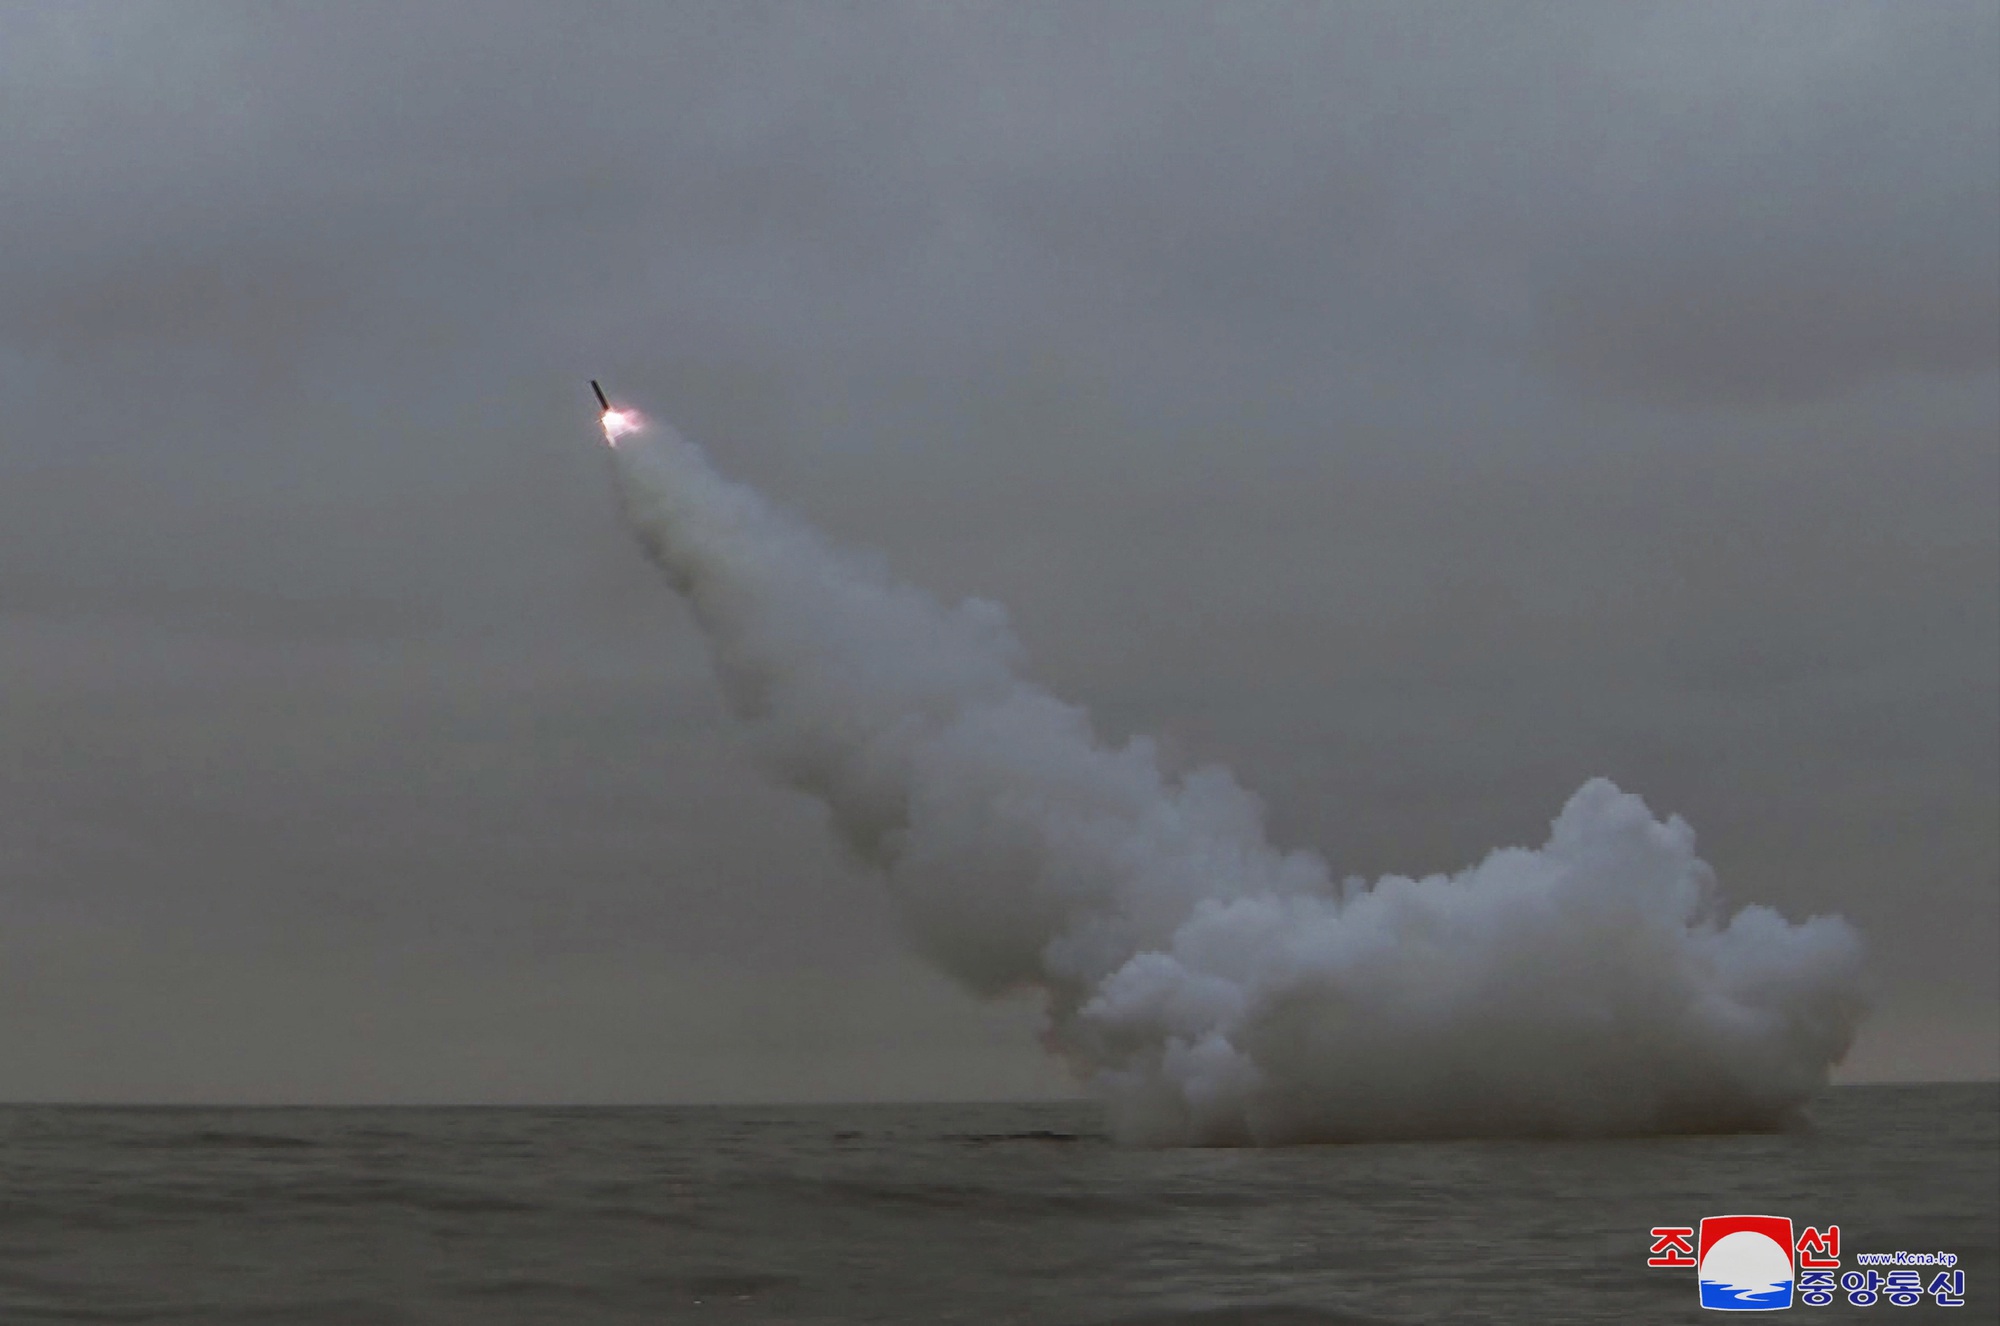 Triều Tiên phóng tên lửa từ tàu ngầm, quân đội Hàn Quốc có động thái - Ảnh 1.